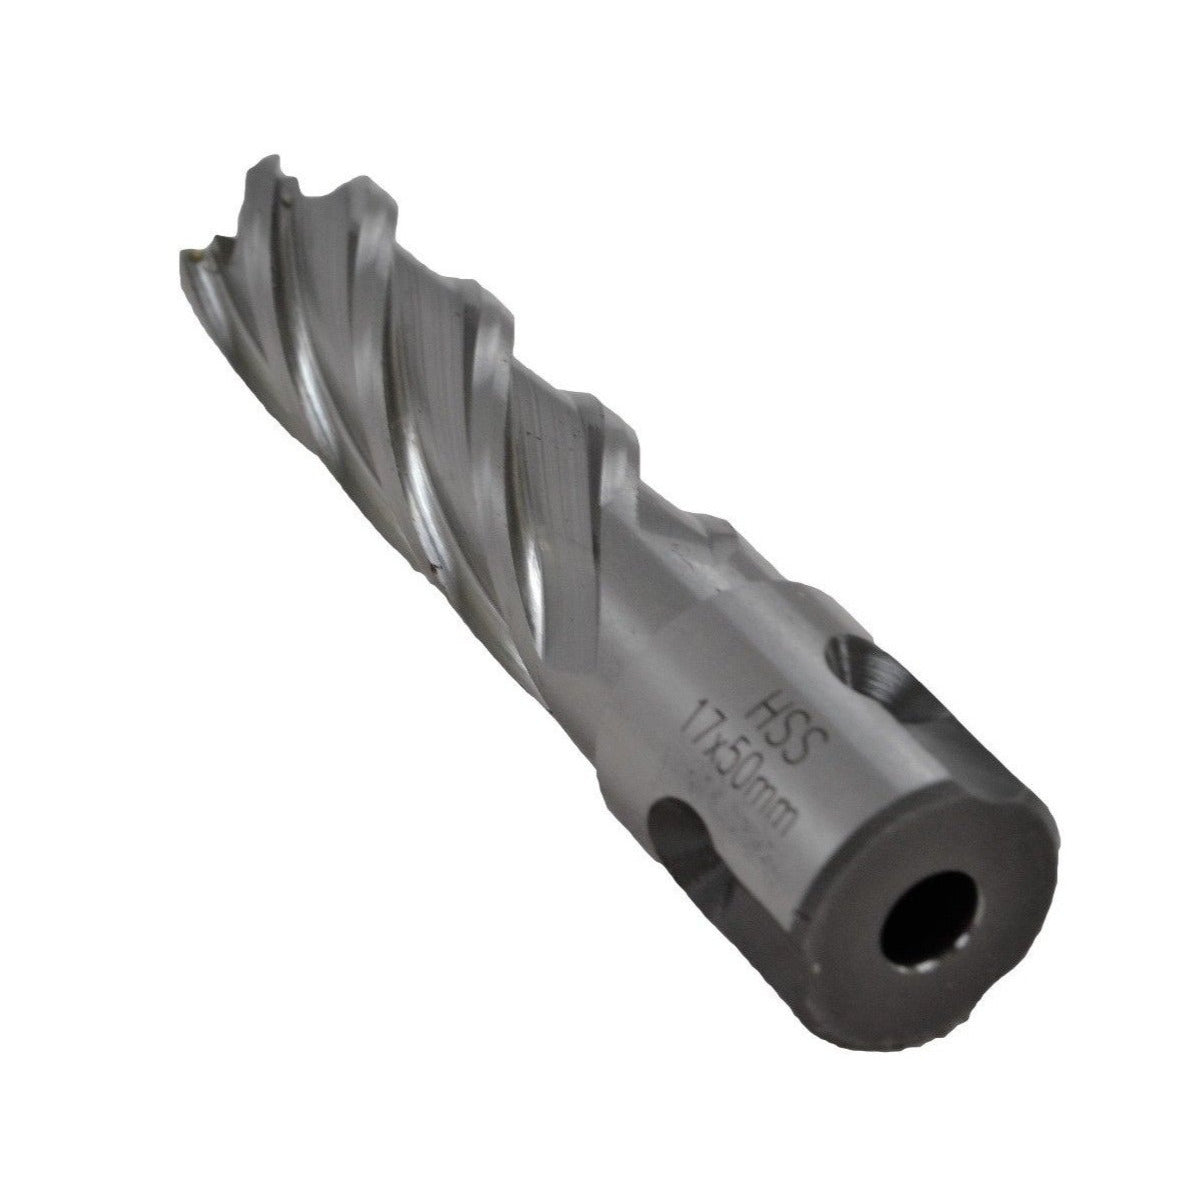 17x50mm HSS Annular Broach Cutter ; Magnetic Drill ; Rotabroach ; Universal Shank